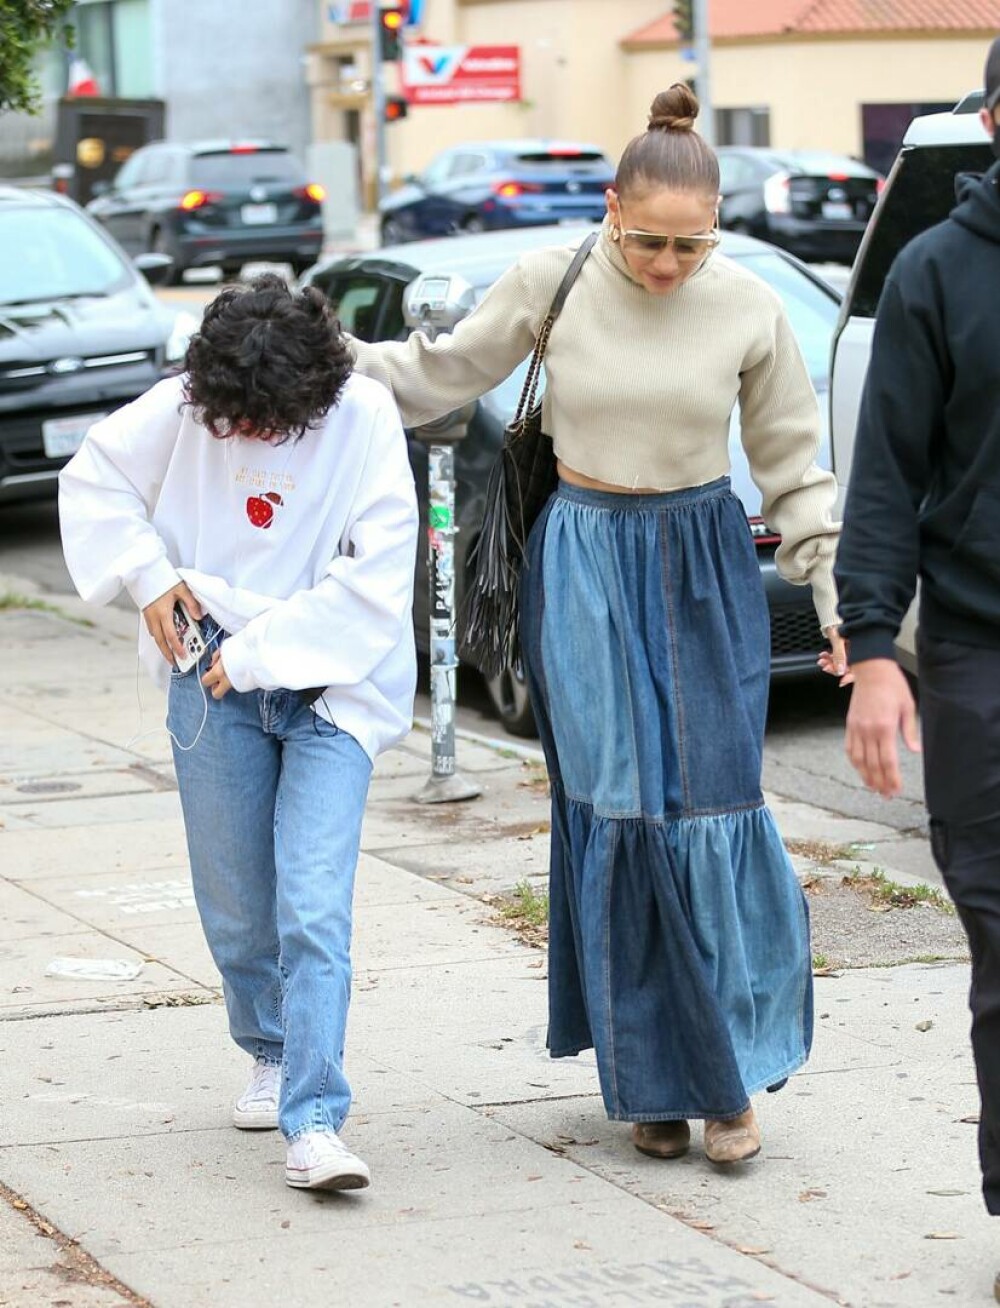 Fotografii rare cu fiica lui Jennifer Lopez. Cum a fost surprinsă de paparazzi. GALERIE FOTO - Imaginea 4